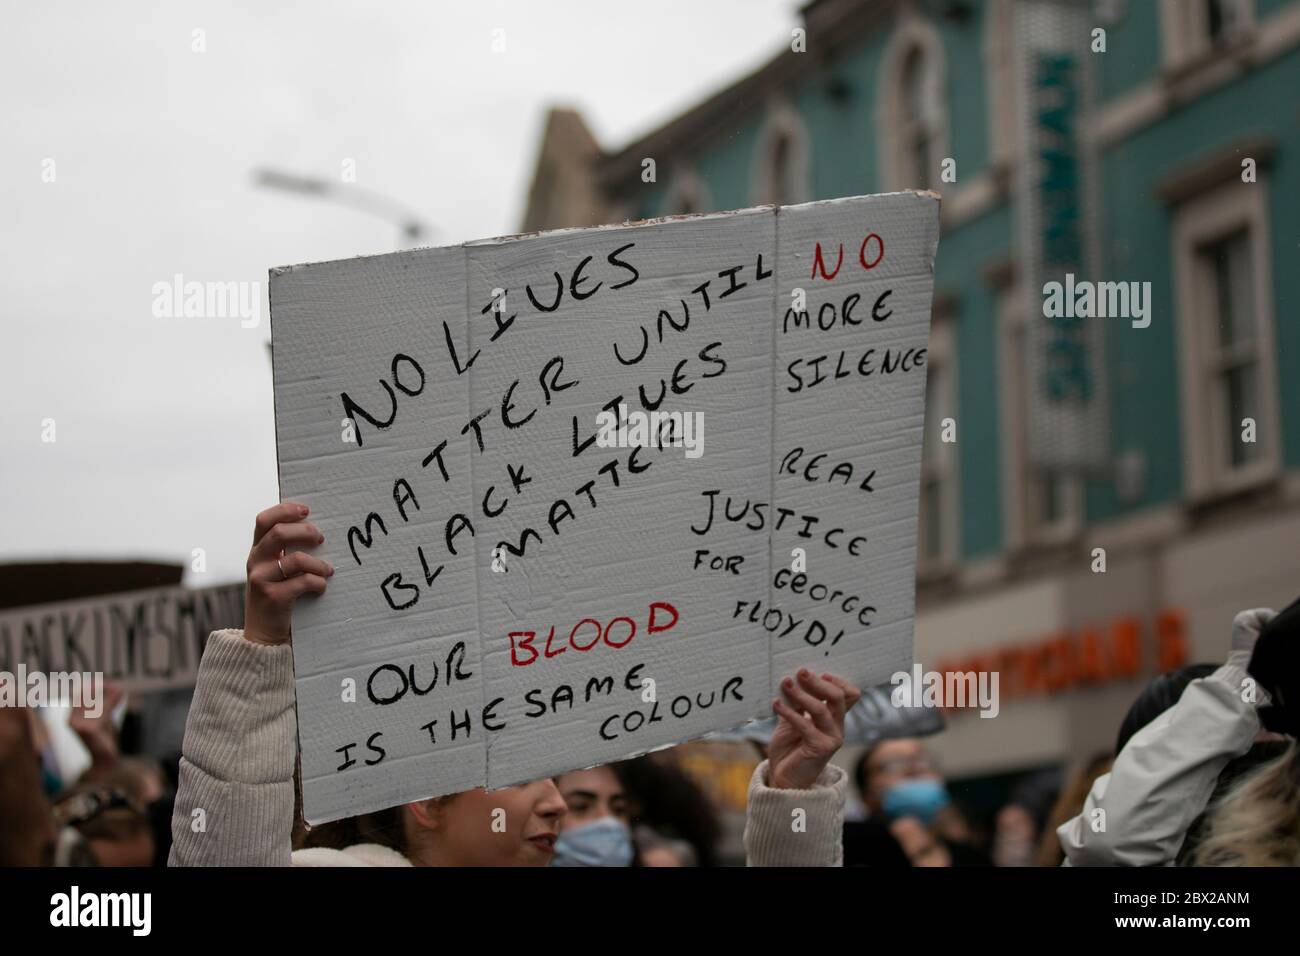 NORTHAMPTON, INGHILTERRA. 3 GIUGNO - i manifestanti si riuniscono a Northampton, in Inghilterra, in una manifestazione dopo che George Floyd è stato ucciso dalla polizia negli Stati Uniti (Credit: Leila Coker | MI News). Foto Stock